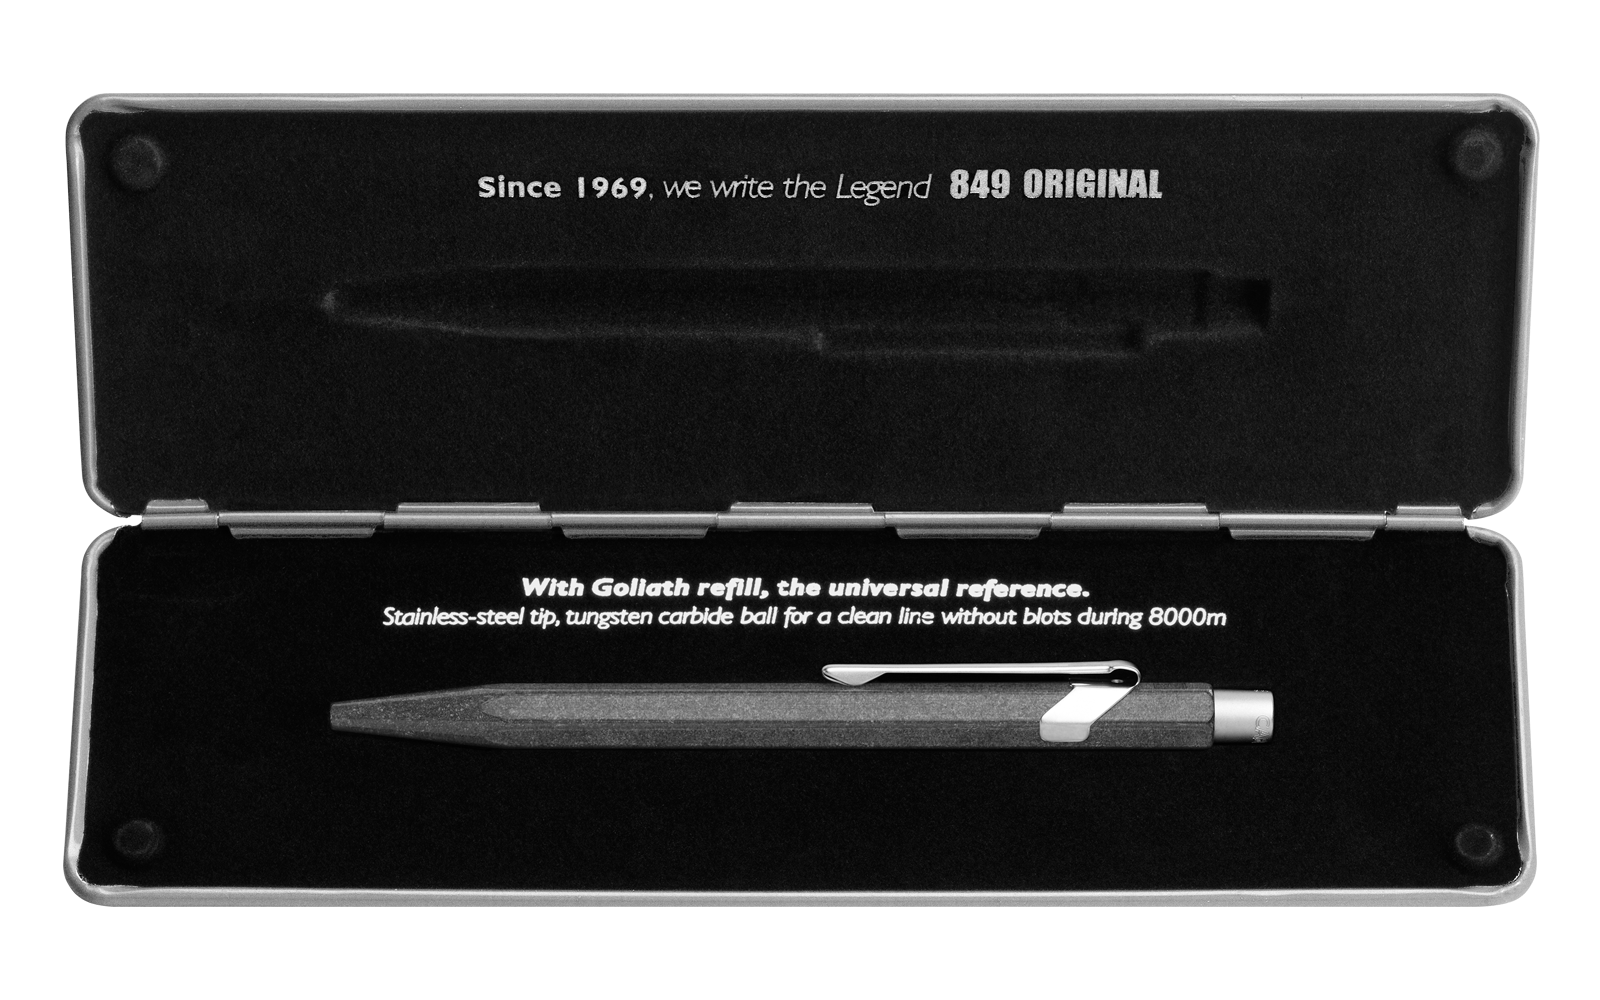 Caran d'Ache-packaging-849-original-pen-design-case-box-writing instrument